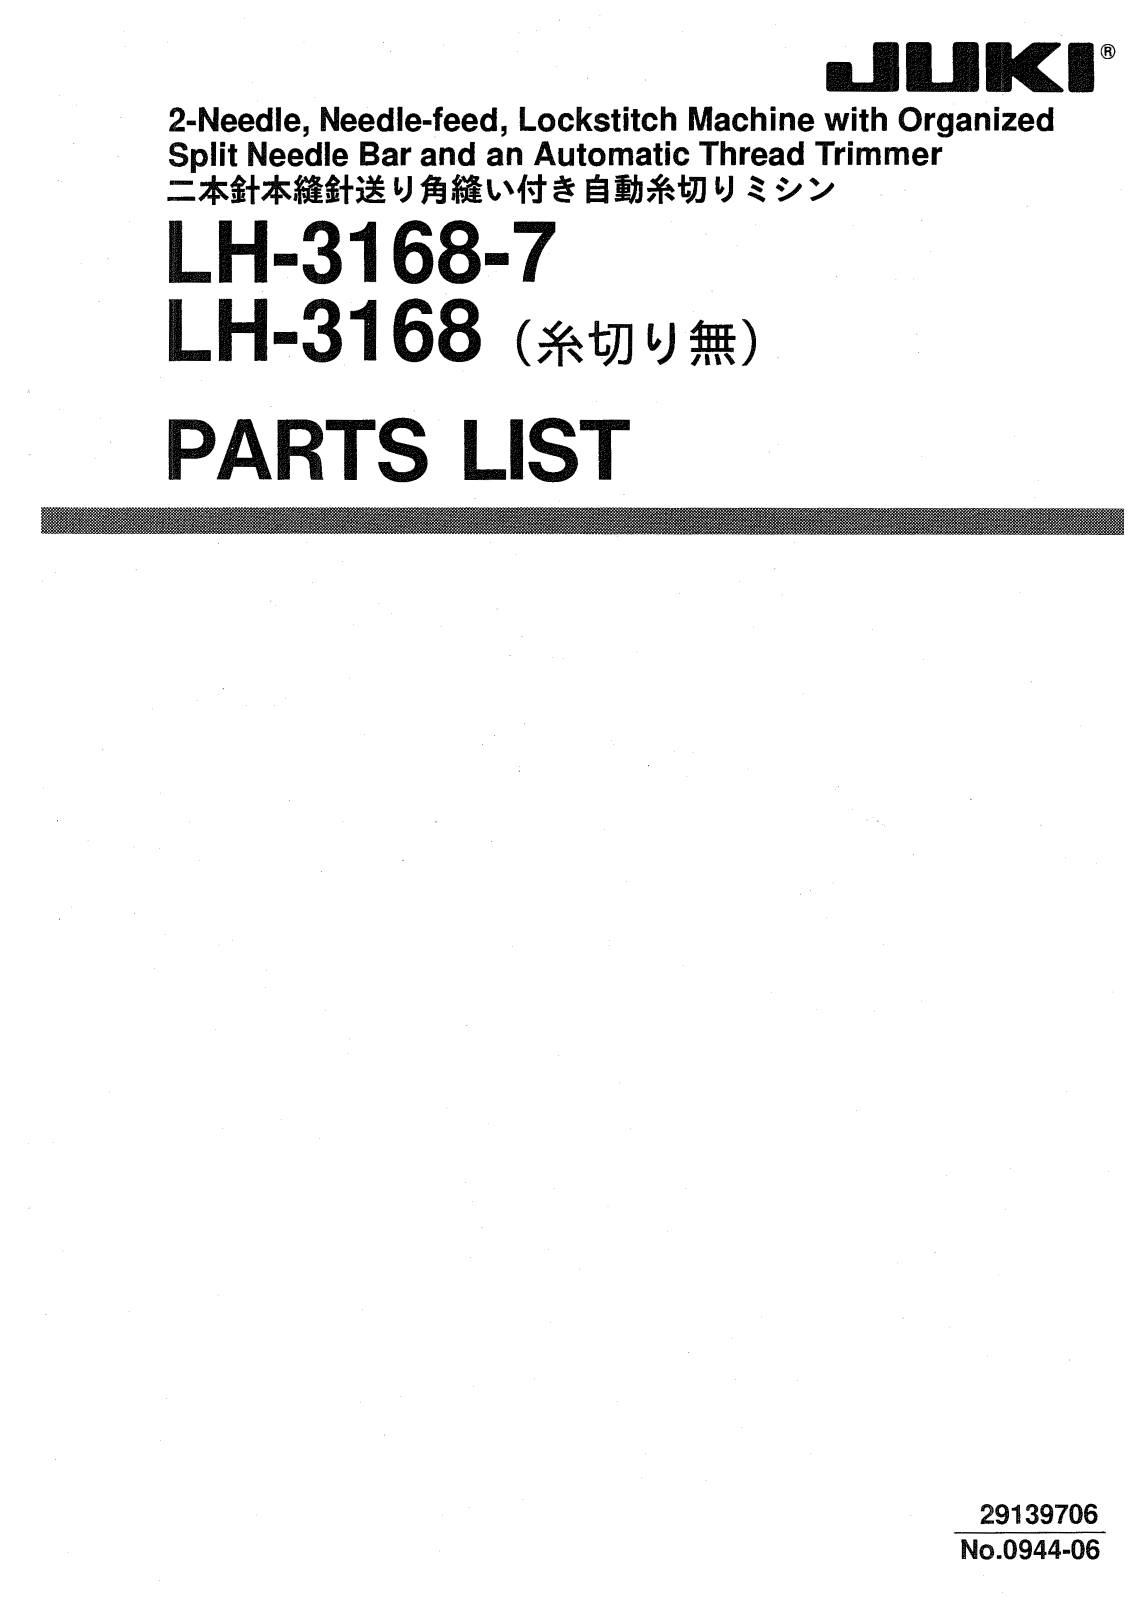 JUKI LH-3168, LH-3168-7 Parts List